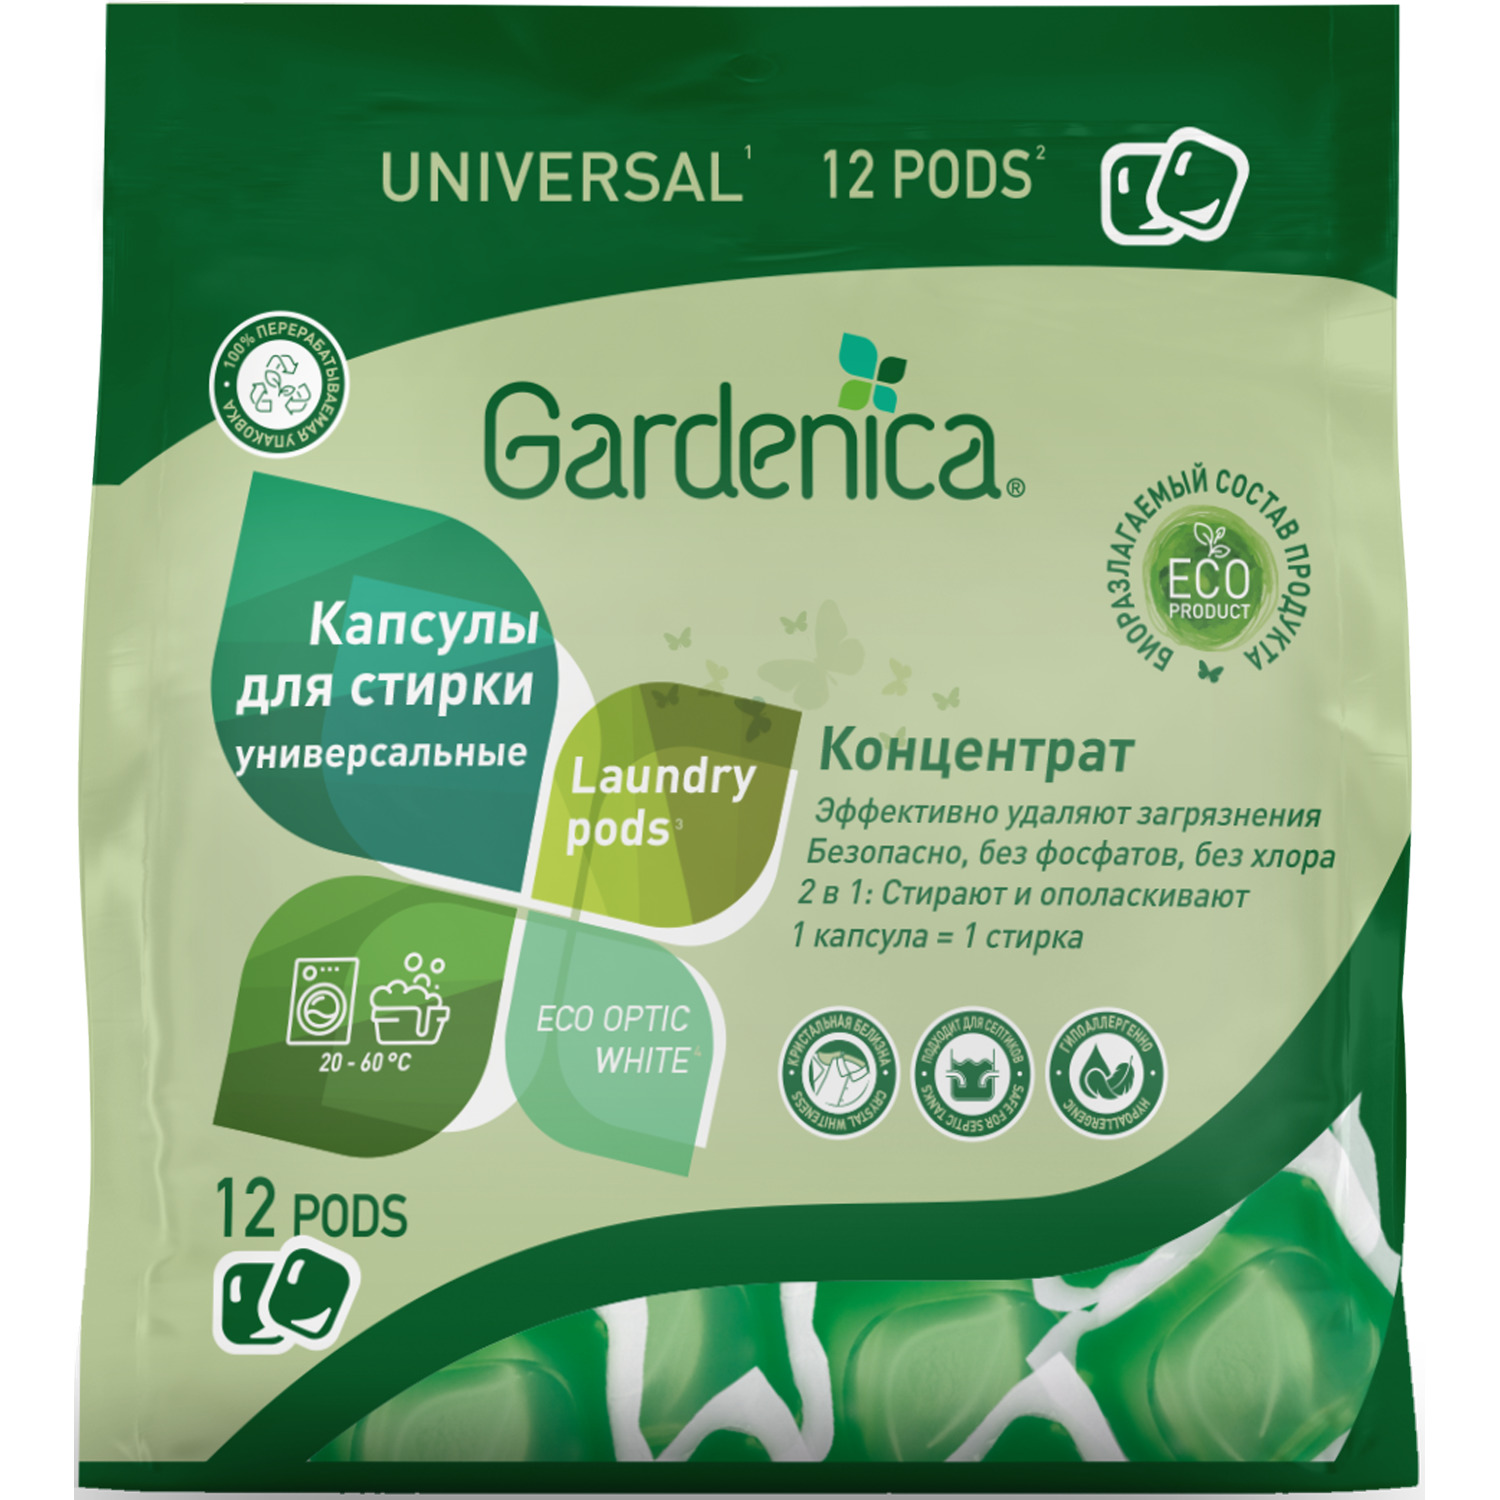 Универсальные эко капсулы Gardenica all in 1 для стирки цветного и белого белья 12шт